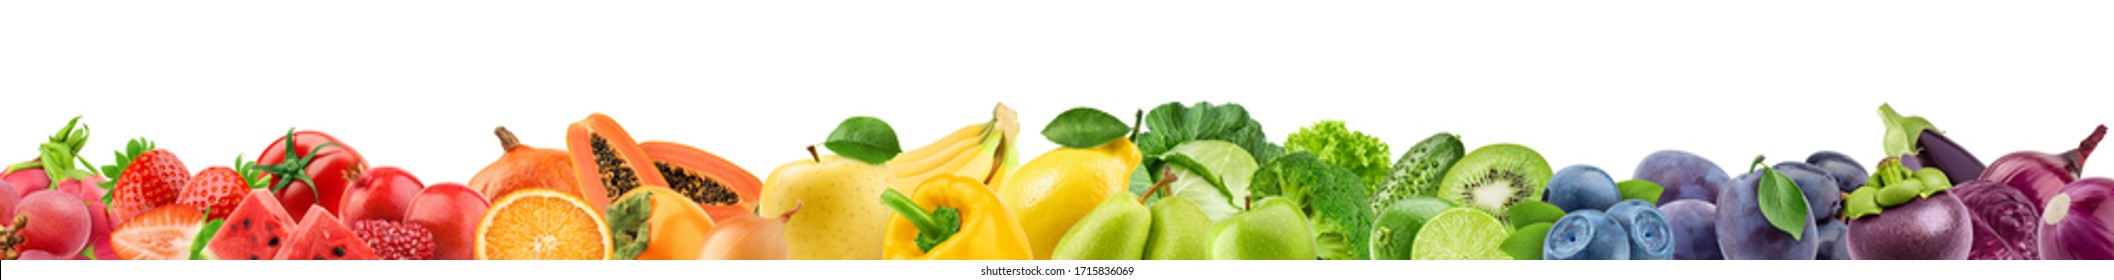 Collage von frischen Früchten, gesundes Lebensmittelkonzept